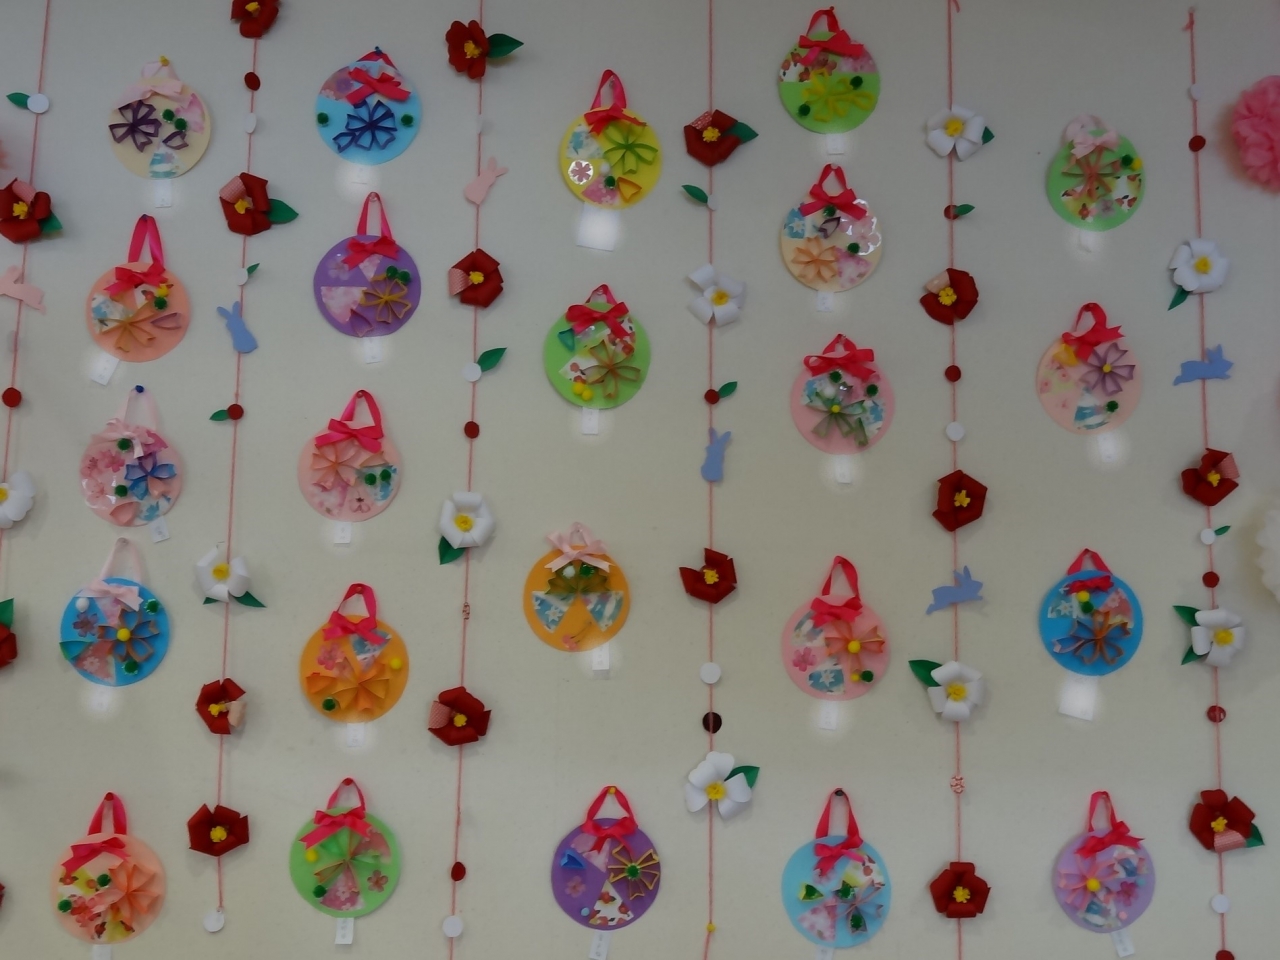 櫻の壁飾り 完成です 新着情報 高岡市にある高齢者介護施設 かざぐるま